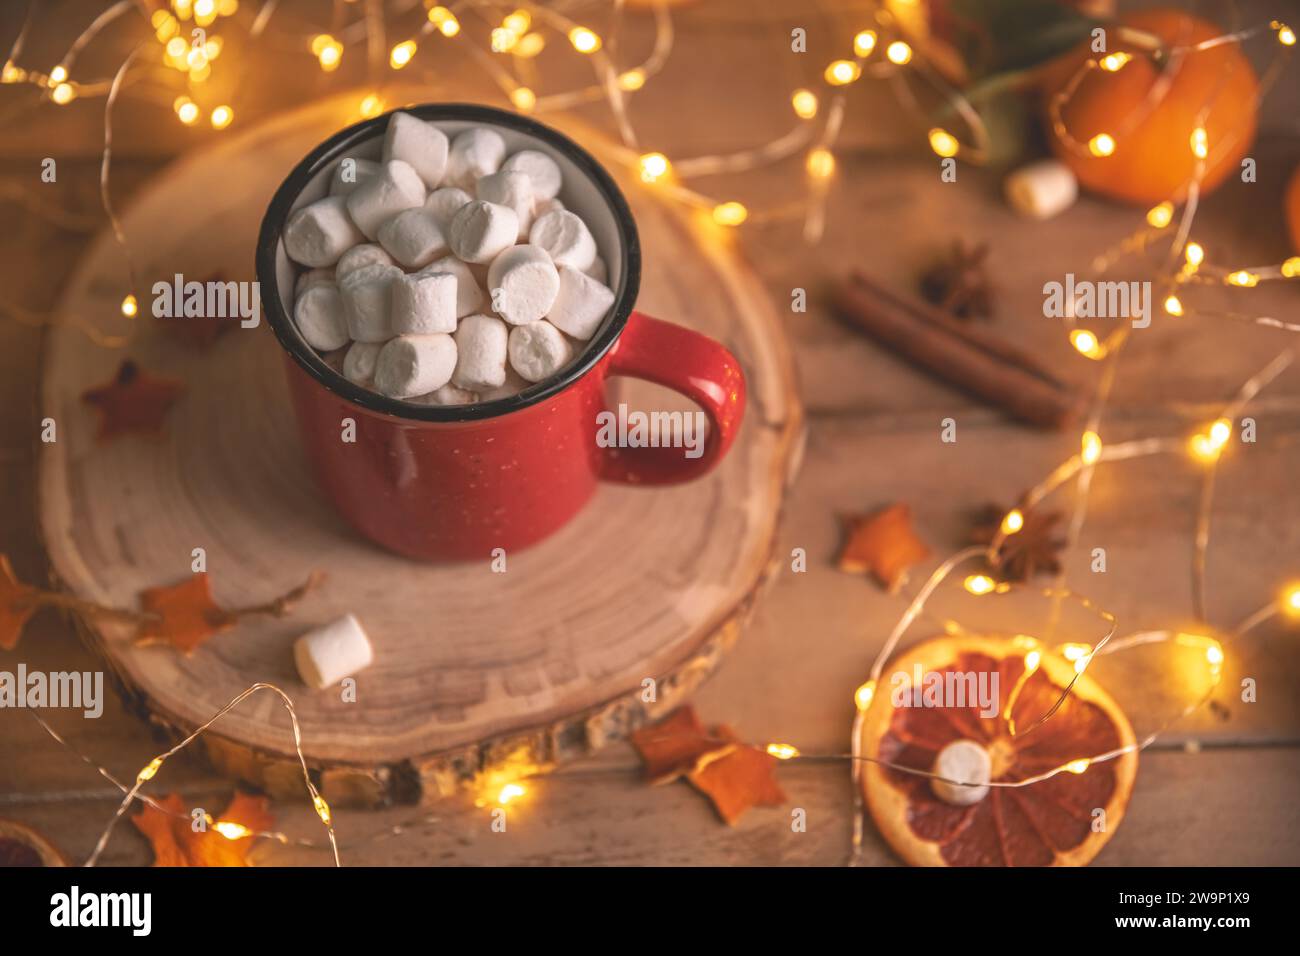 Niedliche, gemütliche Winterkomposition. Rote Tasse, Marshmallows, Orangen und Weihnachtslichter. Silvester und weihnachten, Wärme, Komfort Stockfoto